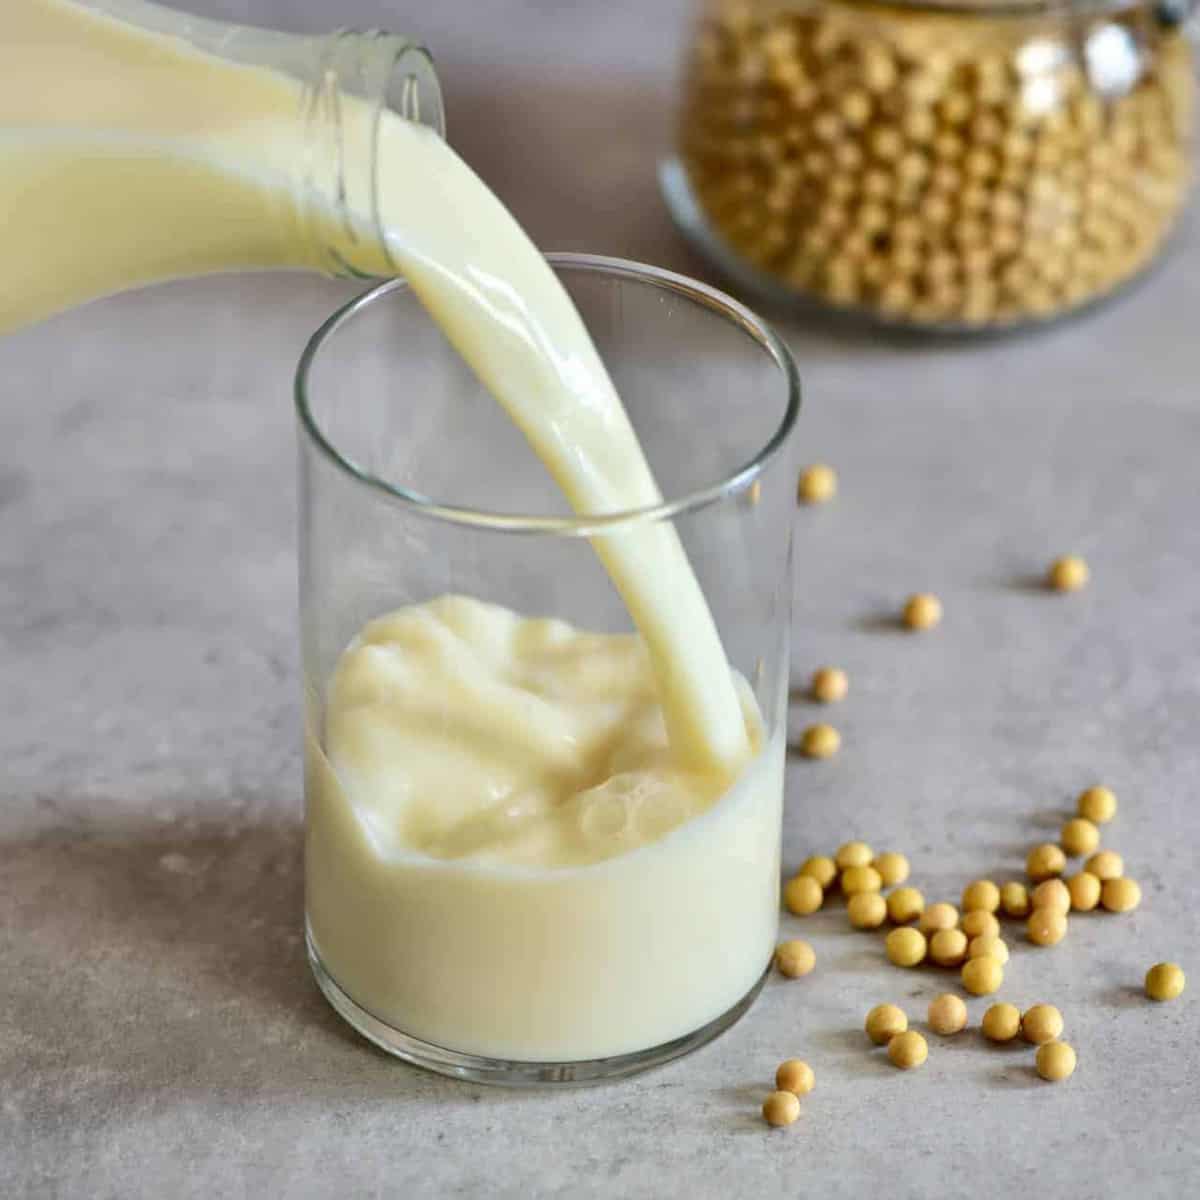 How to make vegan milk - 7 delicious zero waste recipes